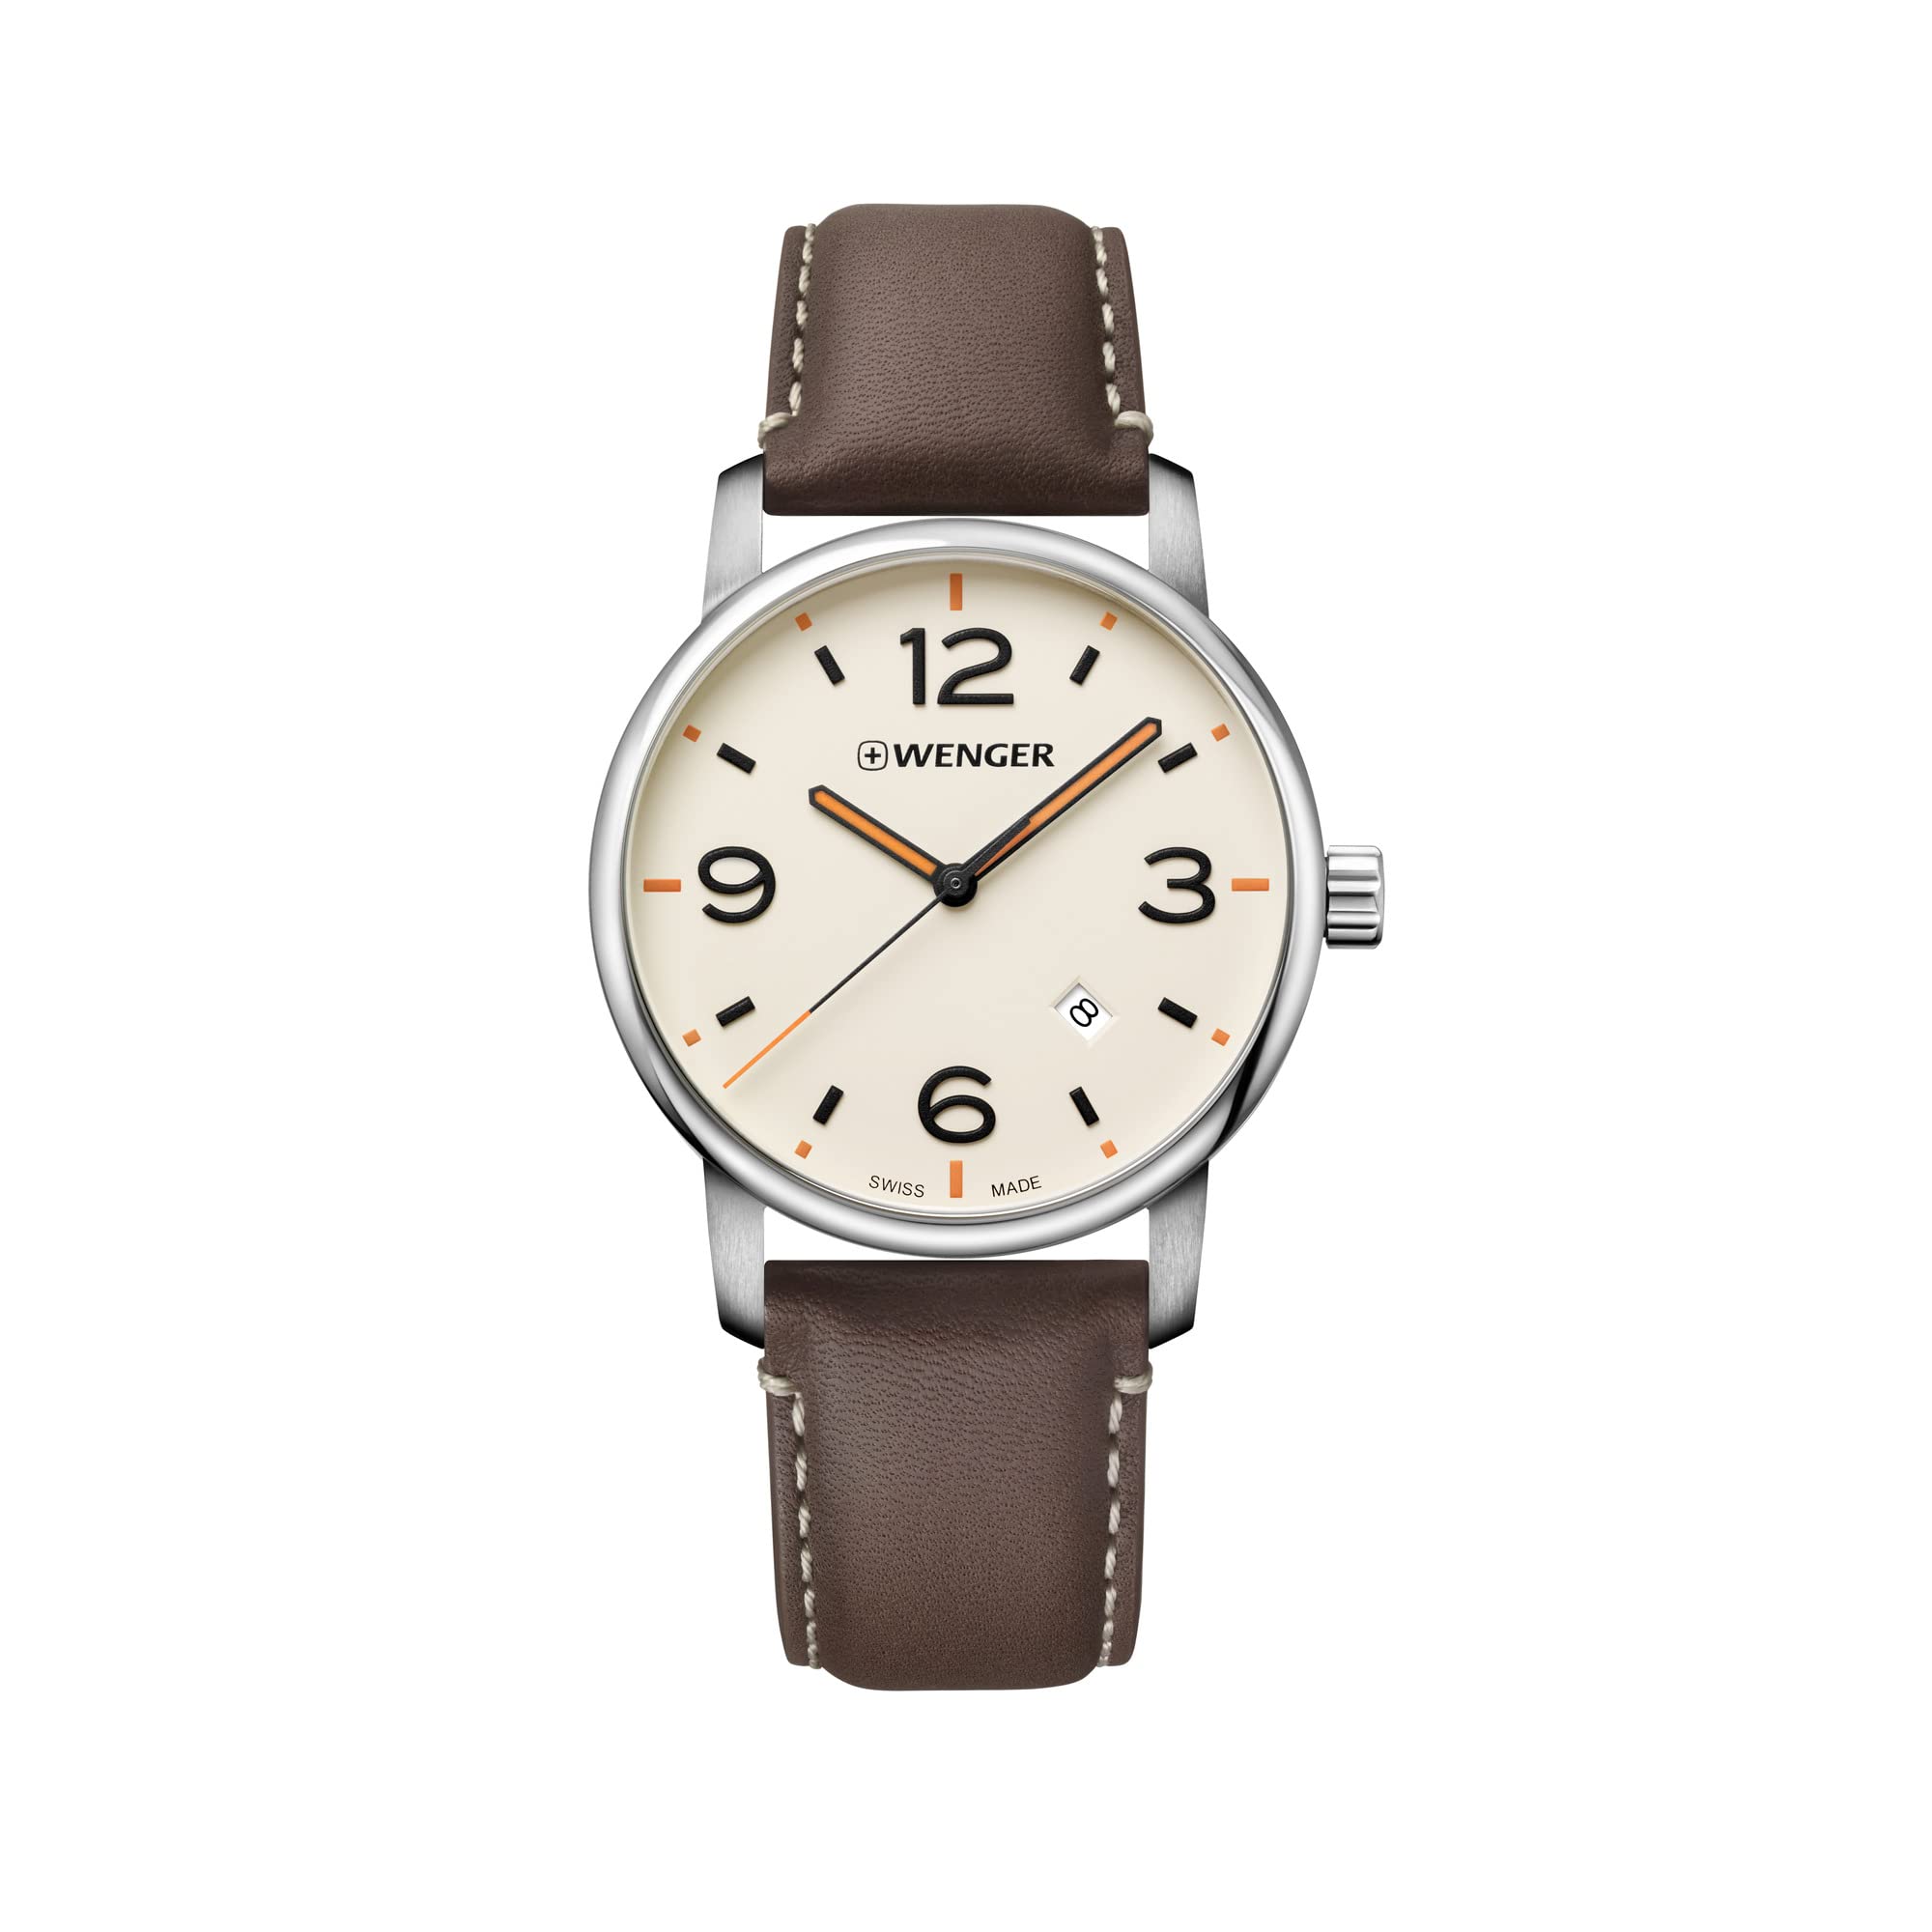 ウェンガー Wenger Mens Stainless Steel Quartz Watch with Leather Strap Brown Model 01.1741.133 送料無料